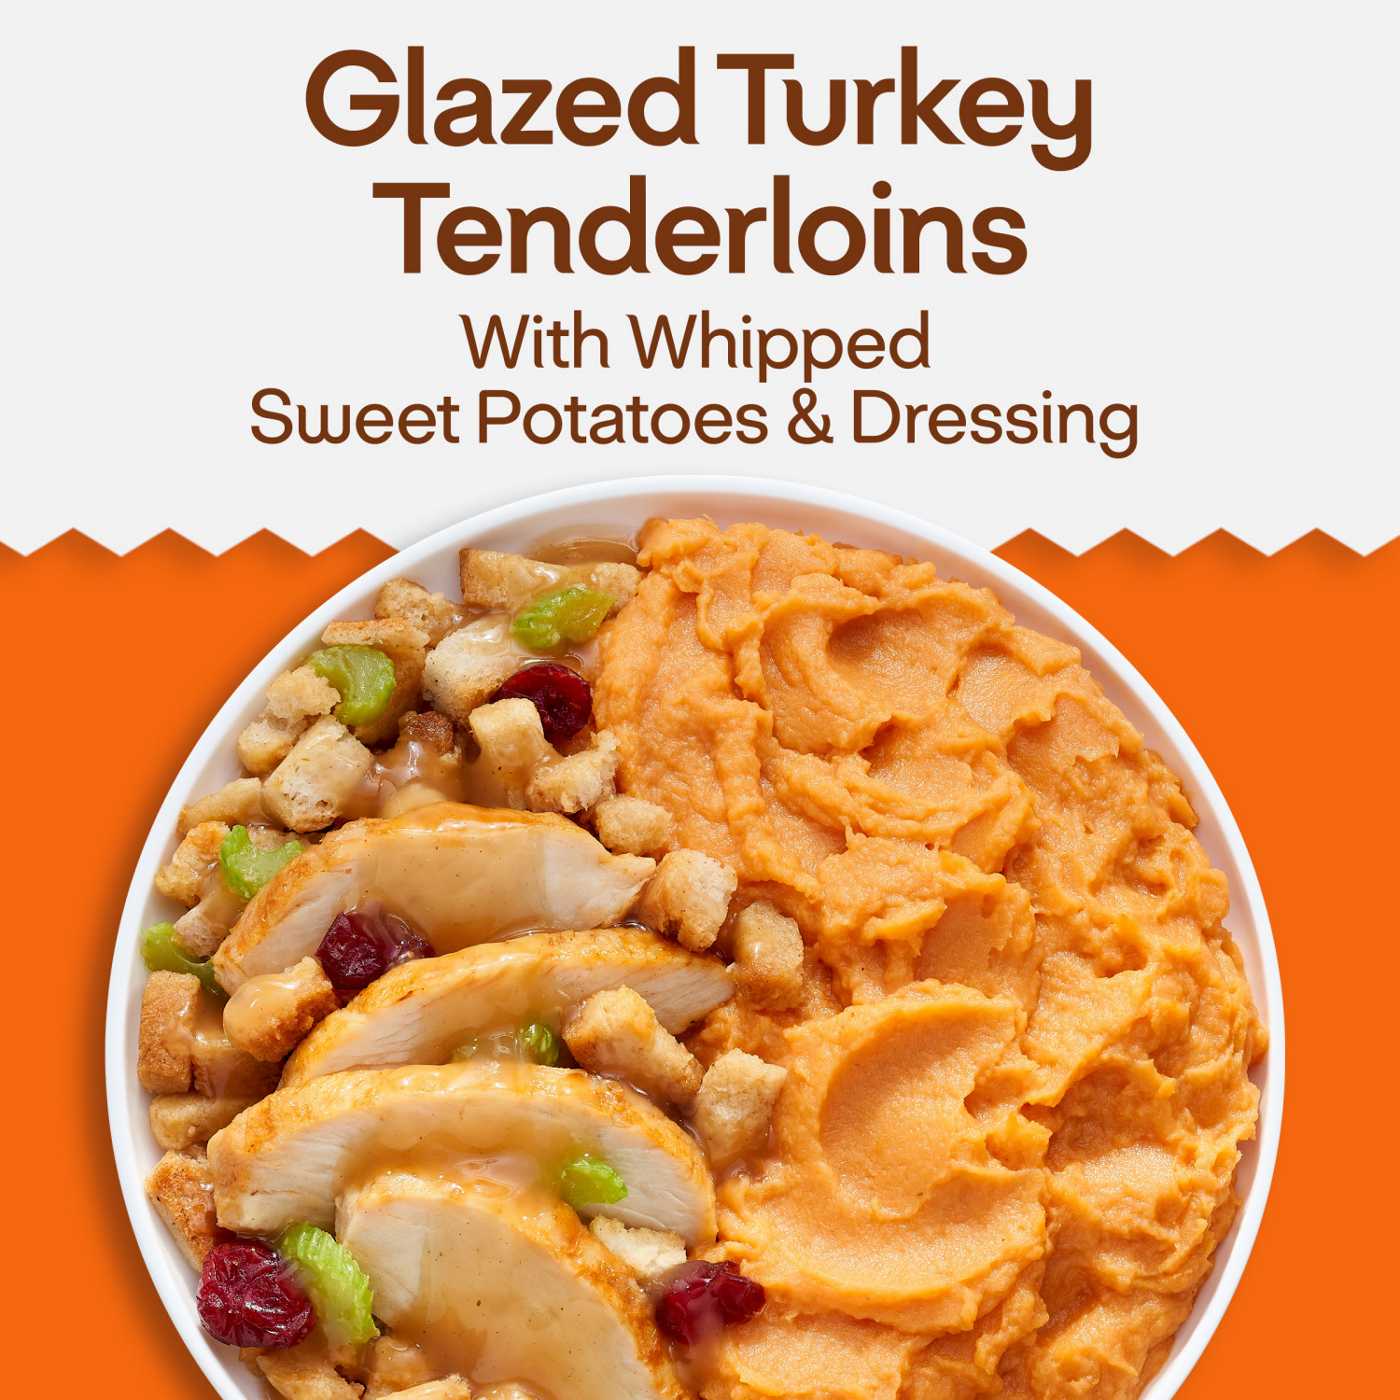 Lean Cuisine 14g Protein Glazed Turkey Tenderloins Frozen Meal; image 3 of 8